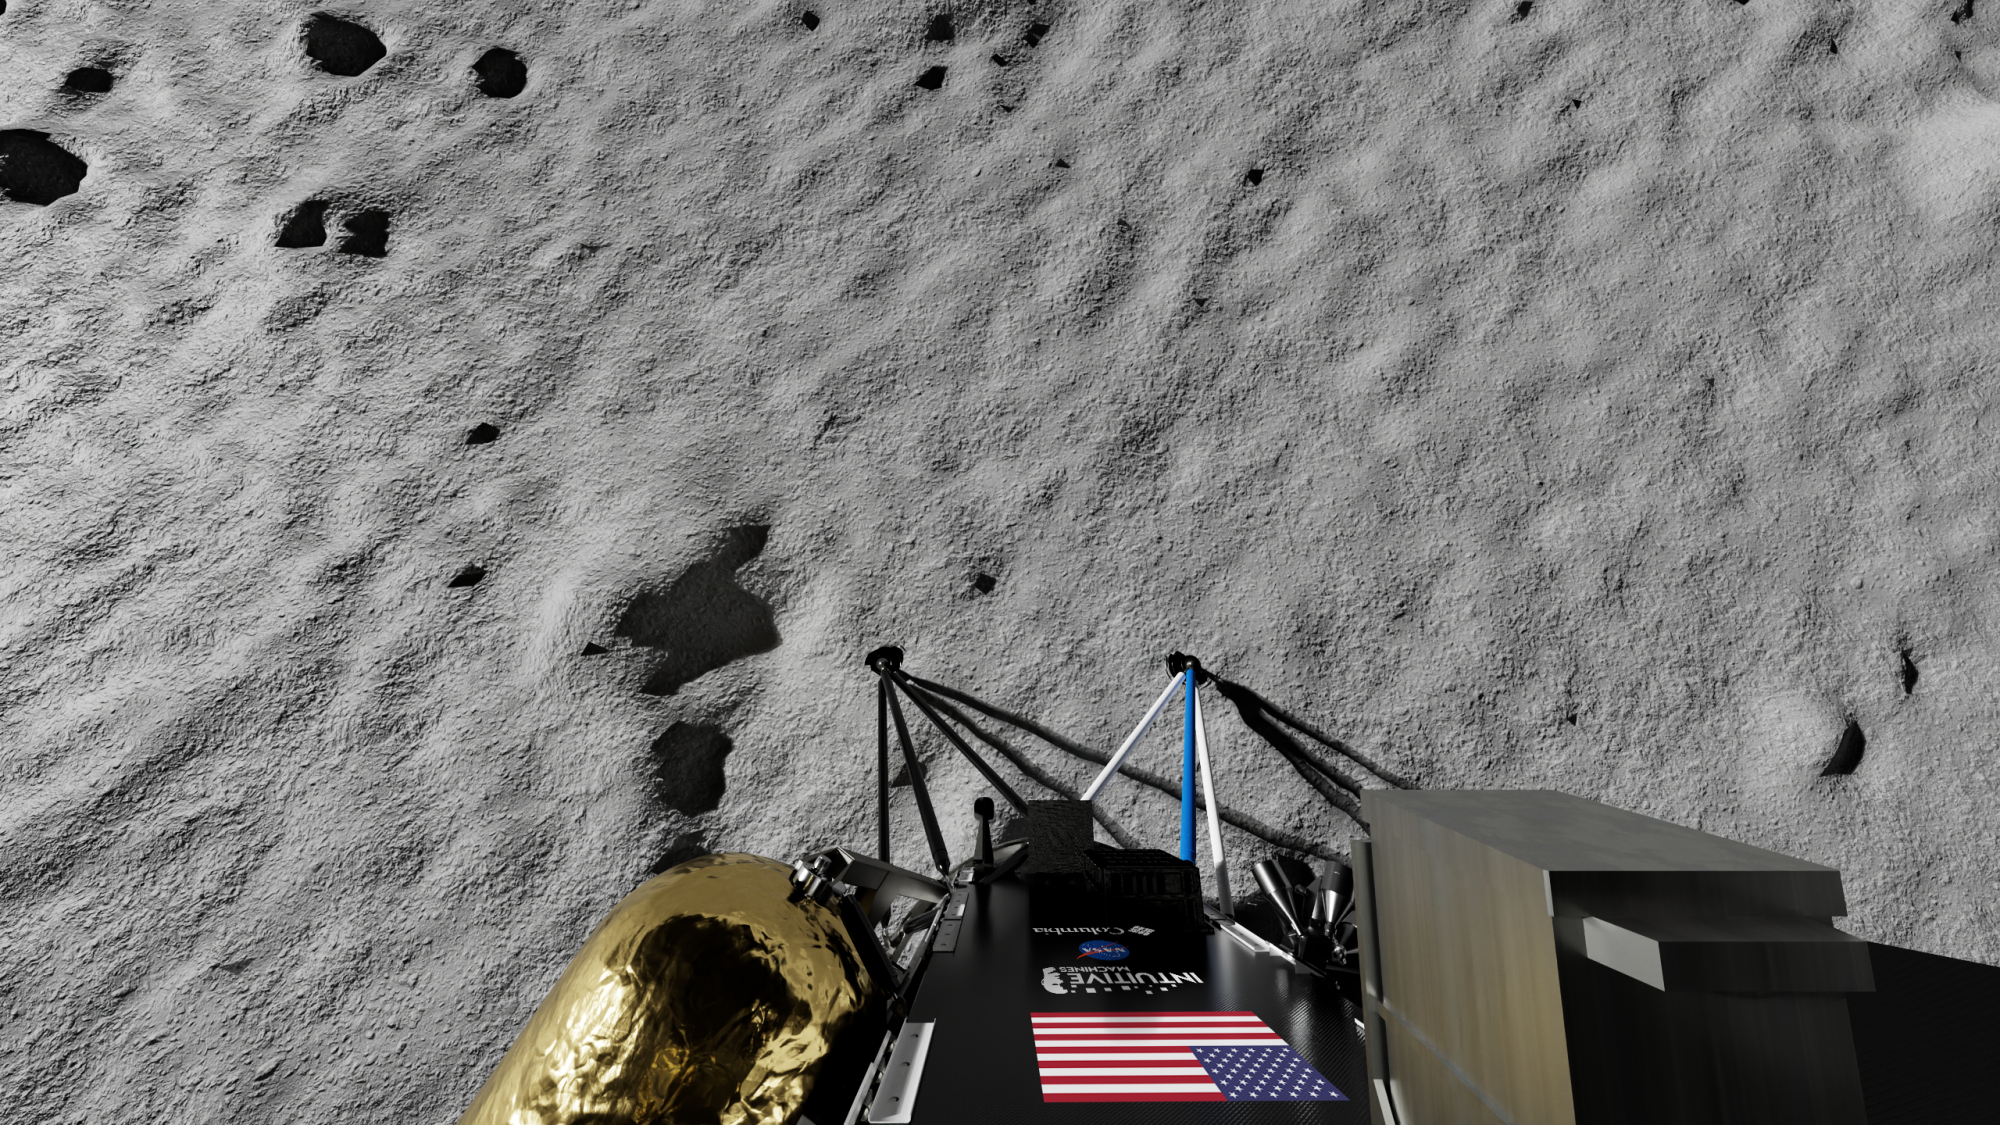 Abbildung zeigt den Lander Nova-C IM-1 Intuitive Machines auf der Mondoberfläche.